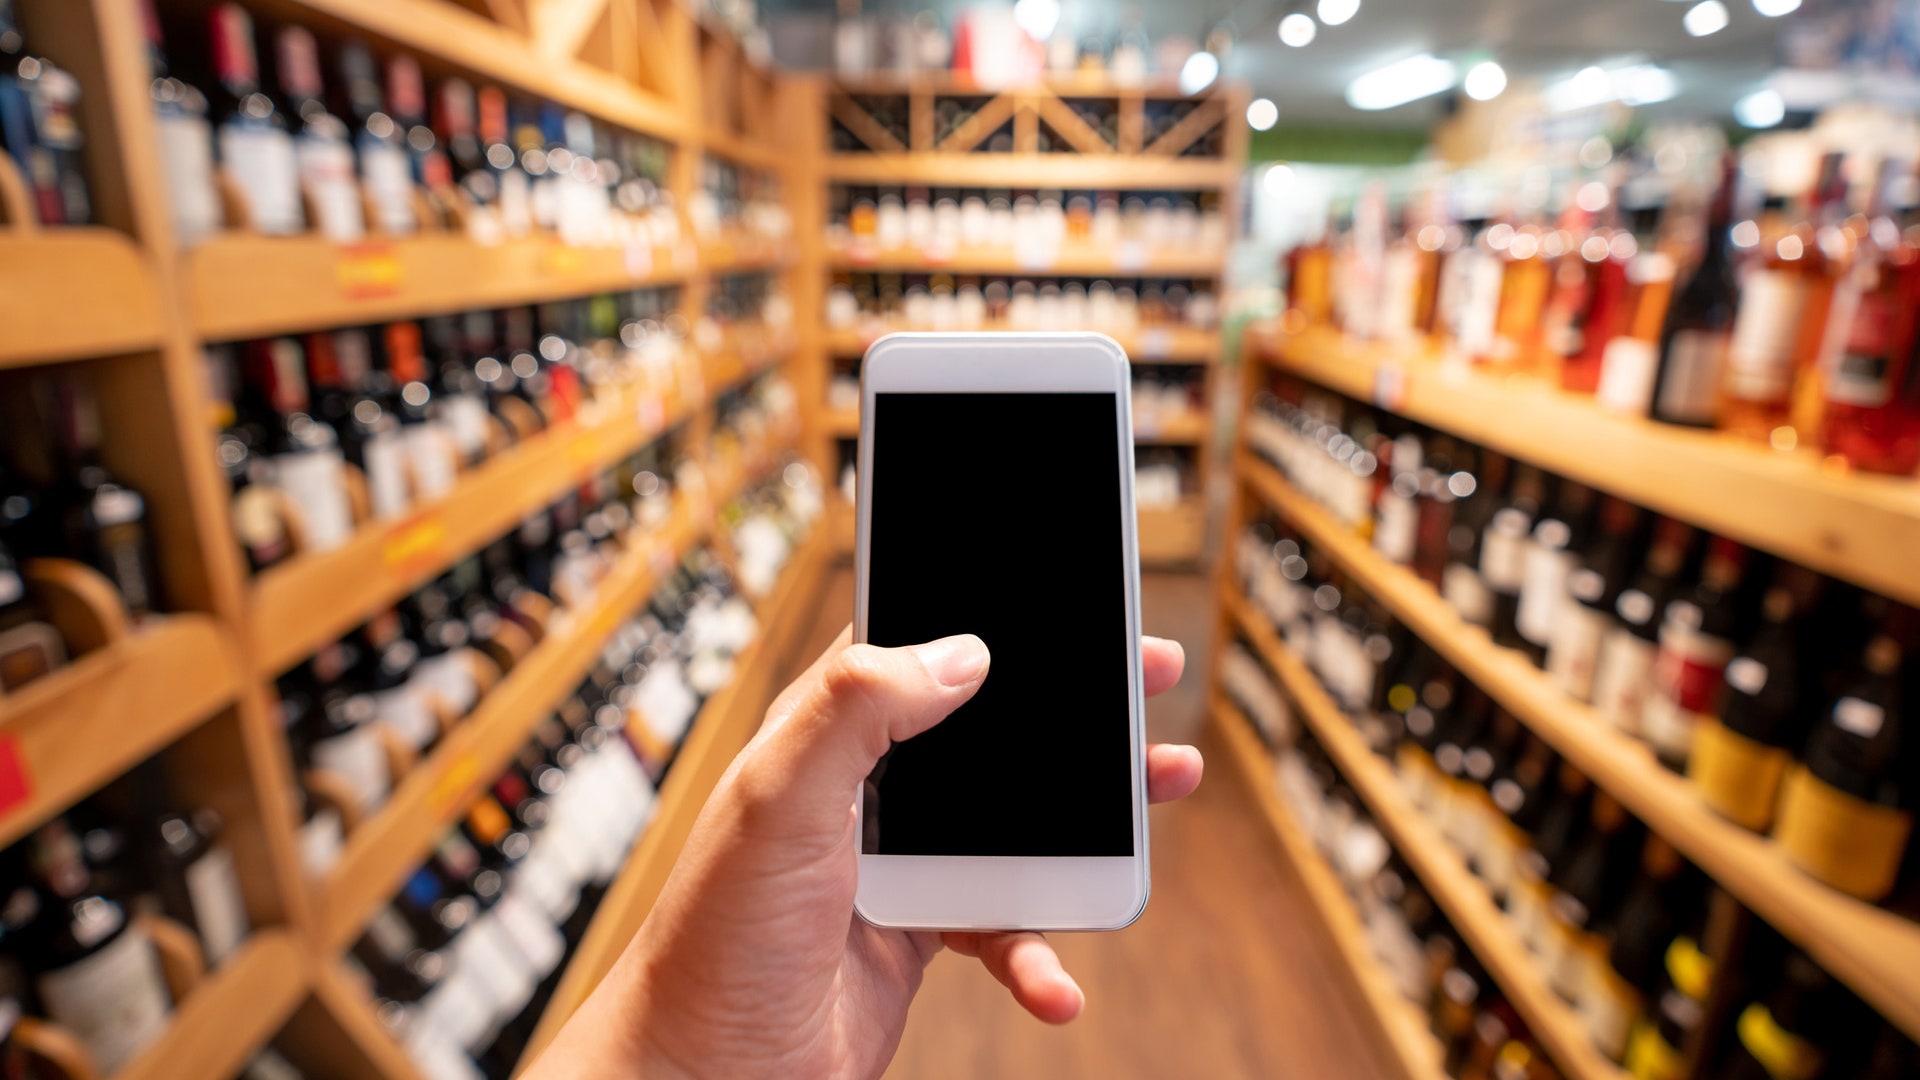 Combivino: arriva l'app che aiuta a scegliere il vino